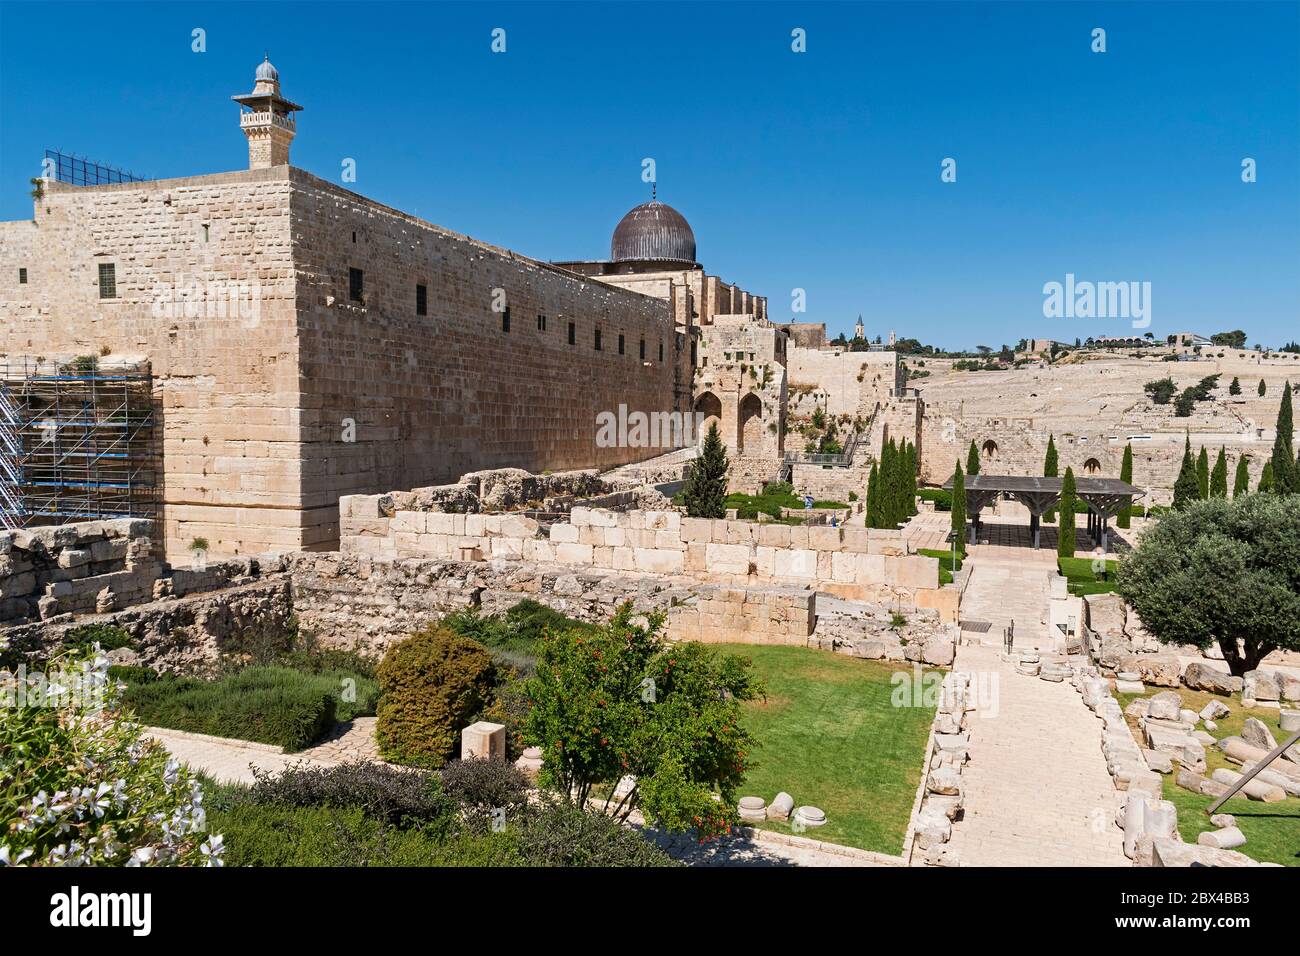 La moschea di al aqsa e il minareto al fakhria dominano la parete meridionale del monte sacro del tempio a Gerusalemme con il monte degli Ulivi sullo sfondo Foto Stock